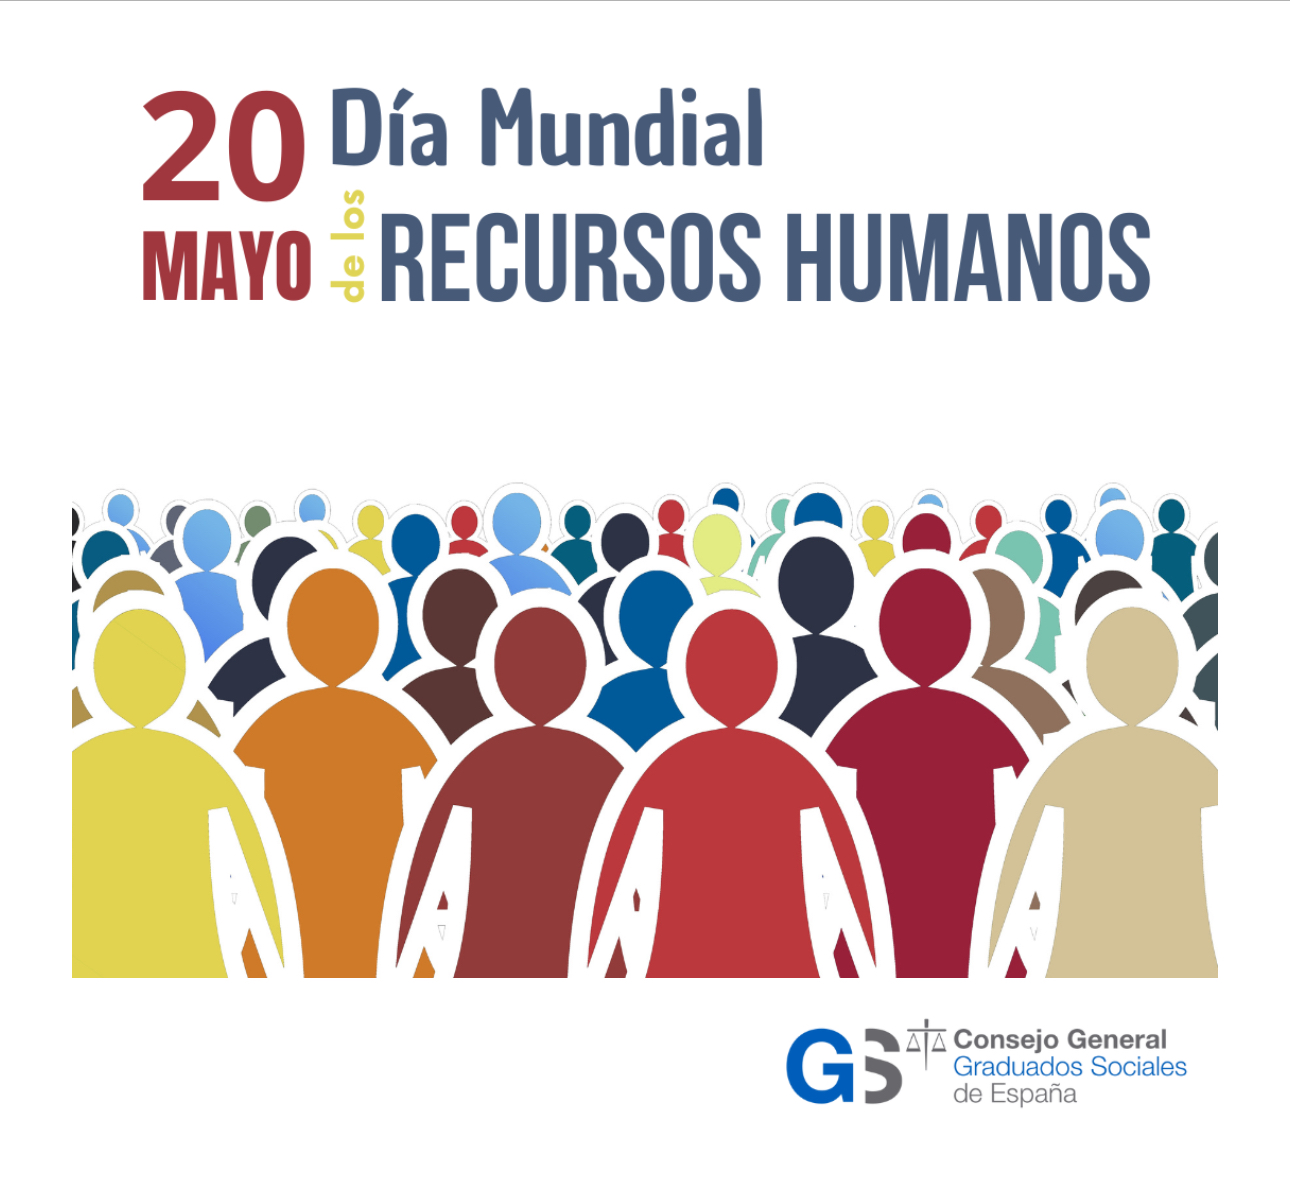 Cartel del Día Mundial de los Recursos Humanos del Consejo General de Graduados Sociales de España